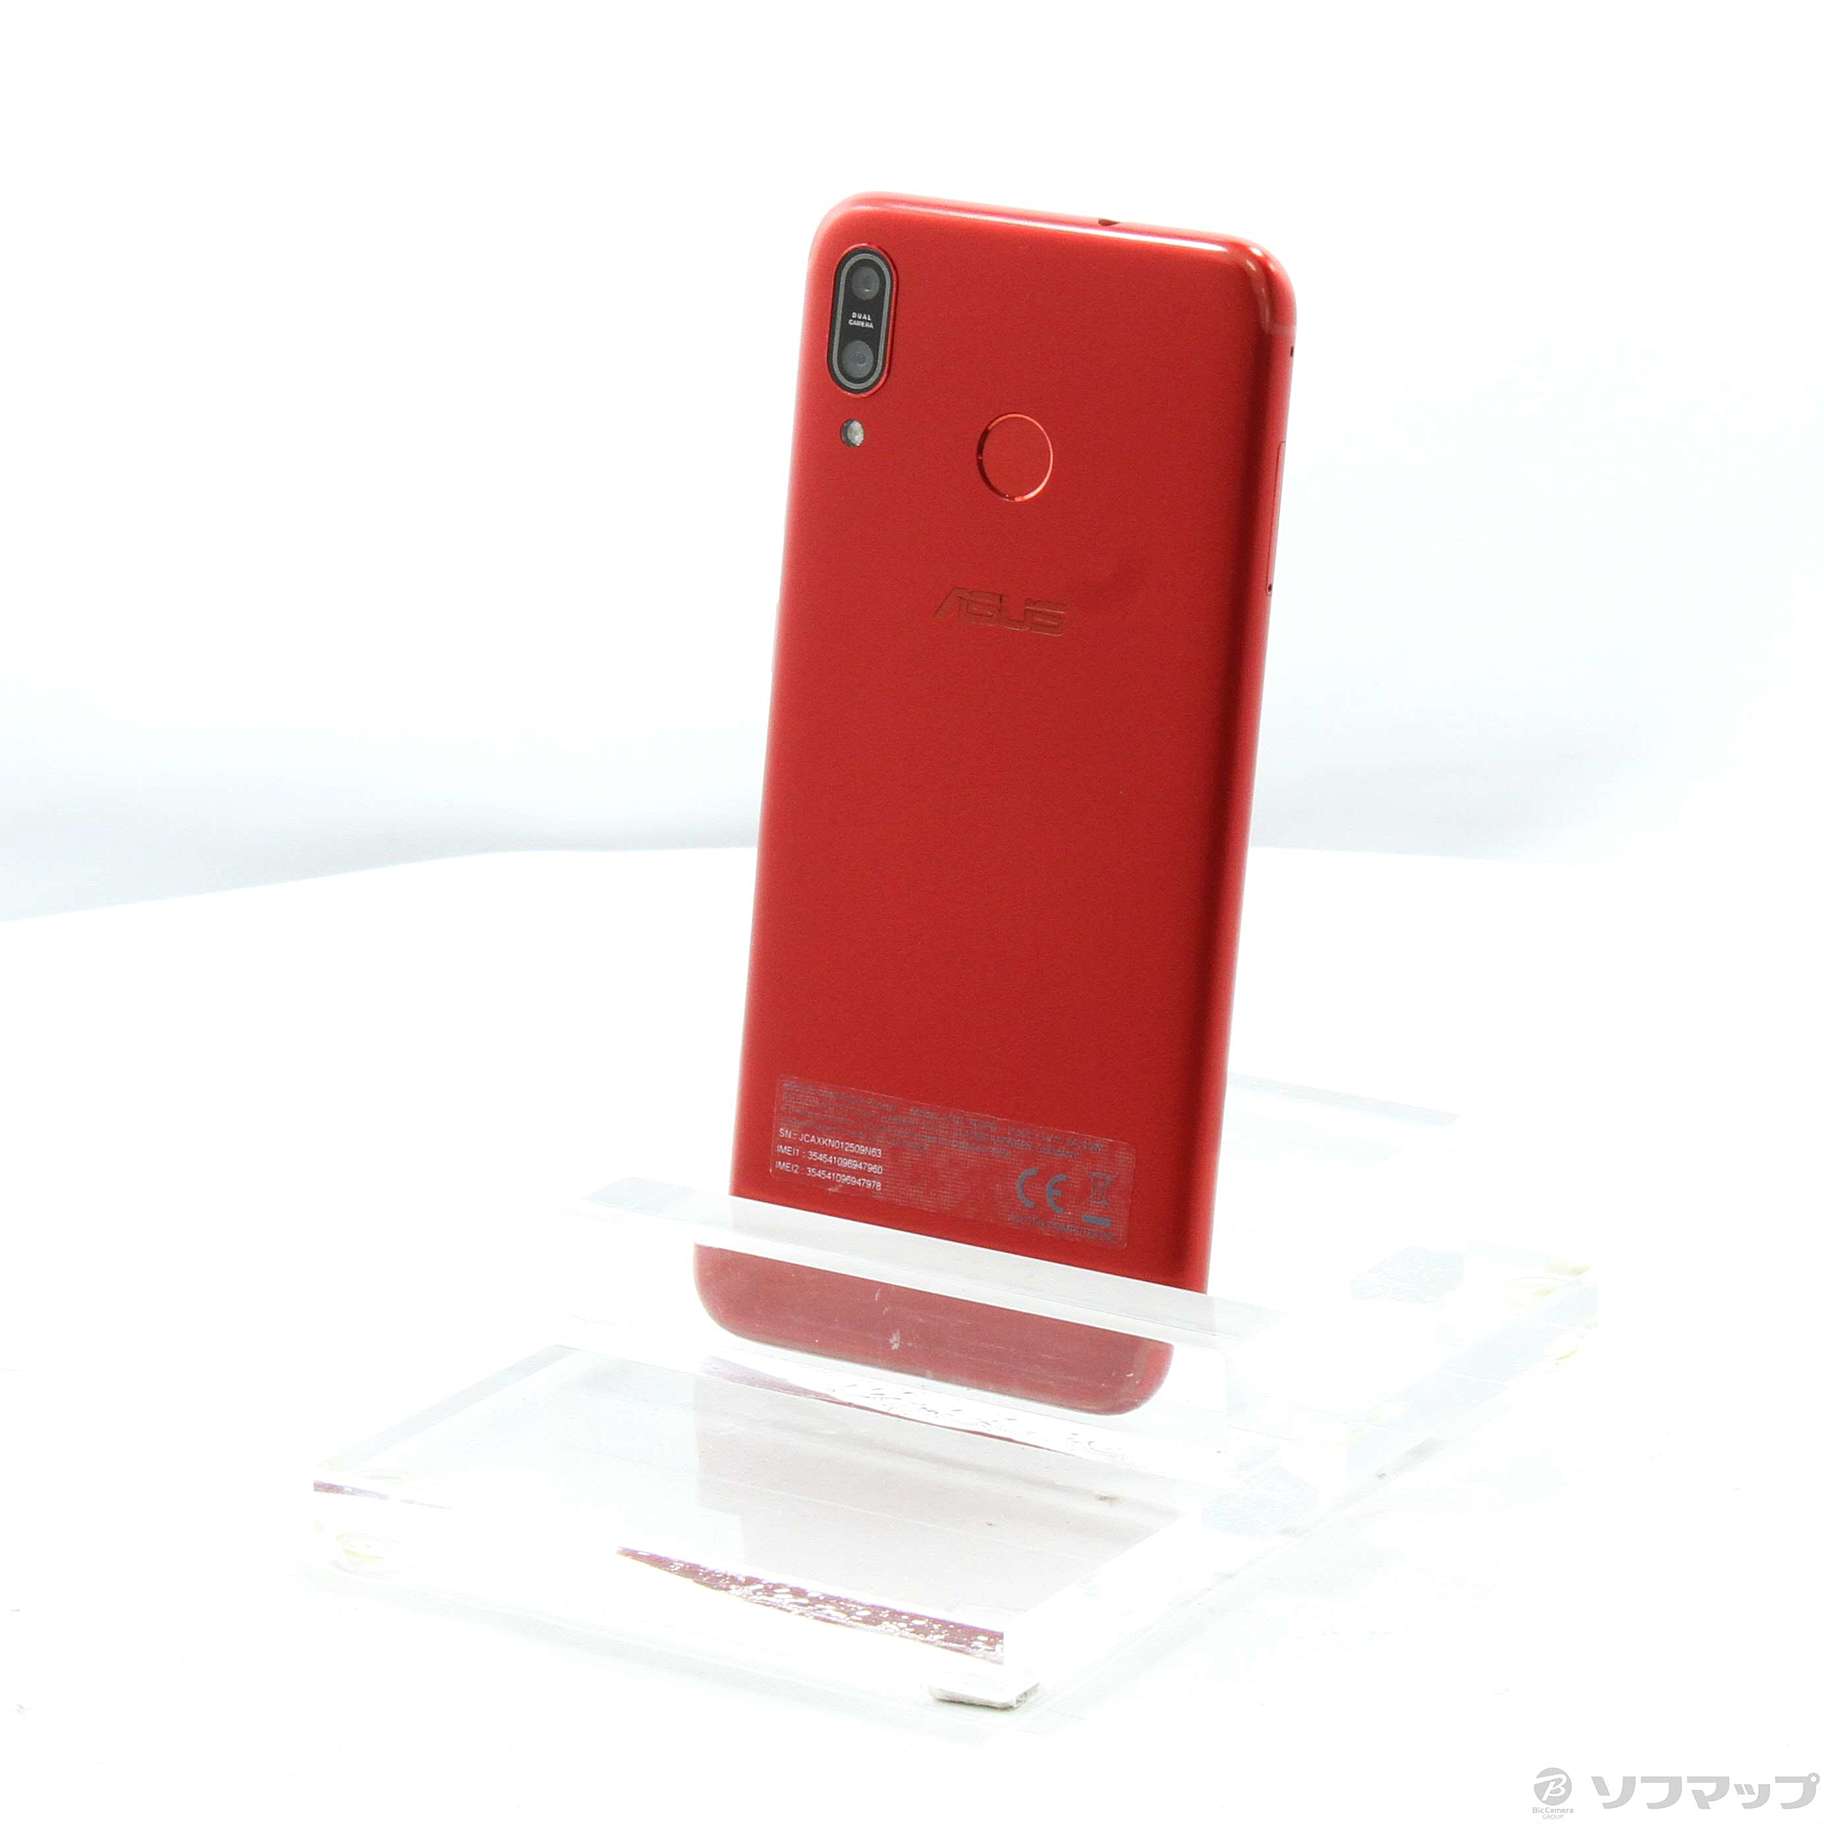 2024高品質Zenfone Max M1 ZB555KL-RD32S3 スマートフォン本体